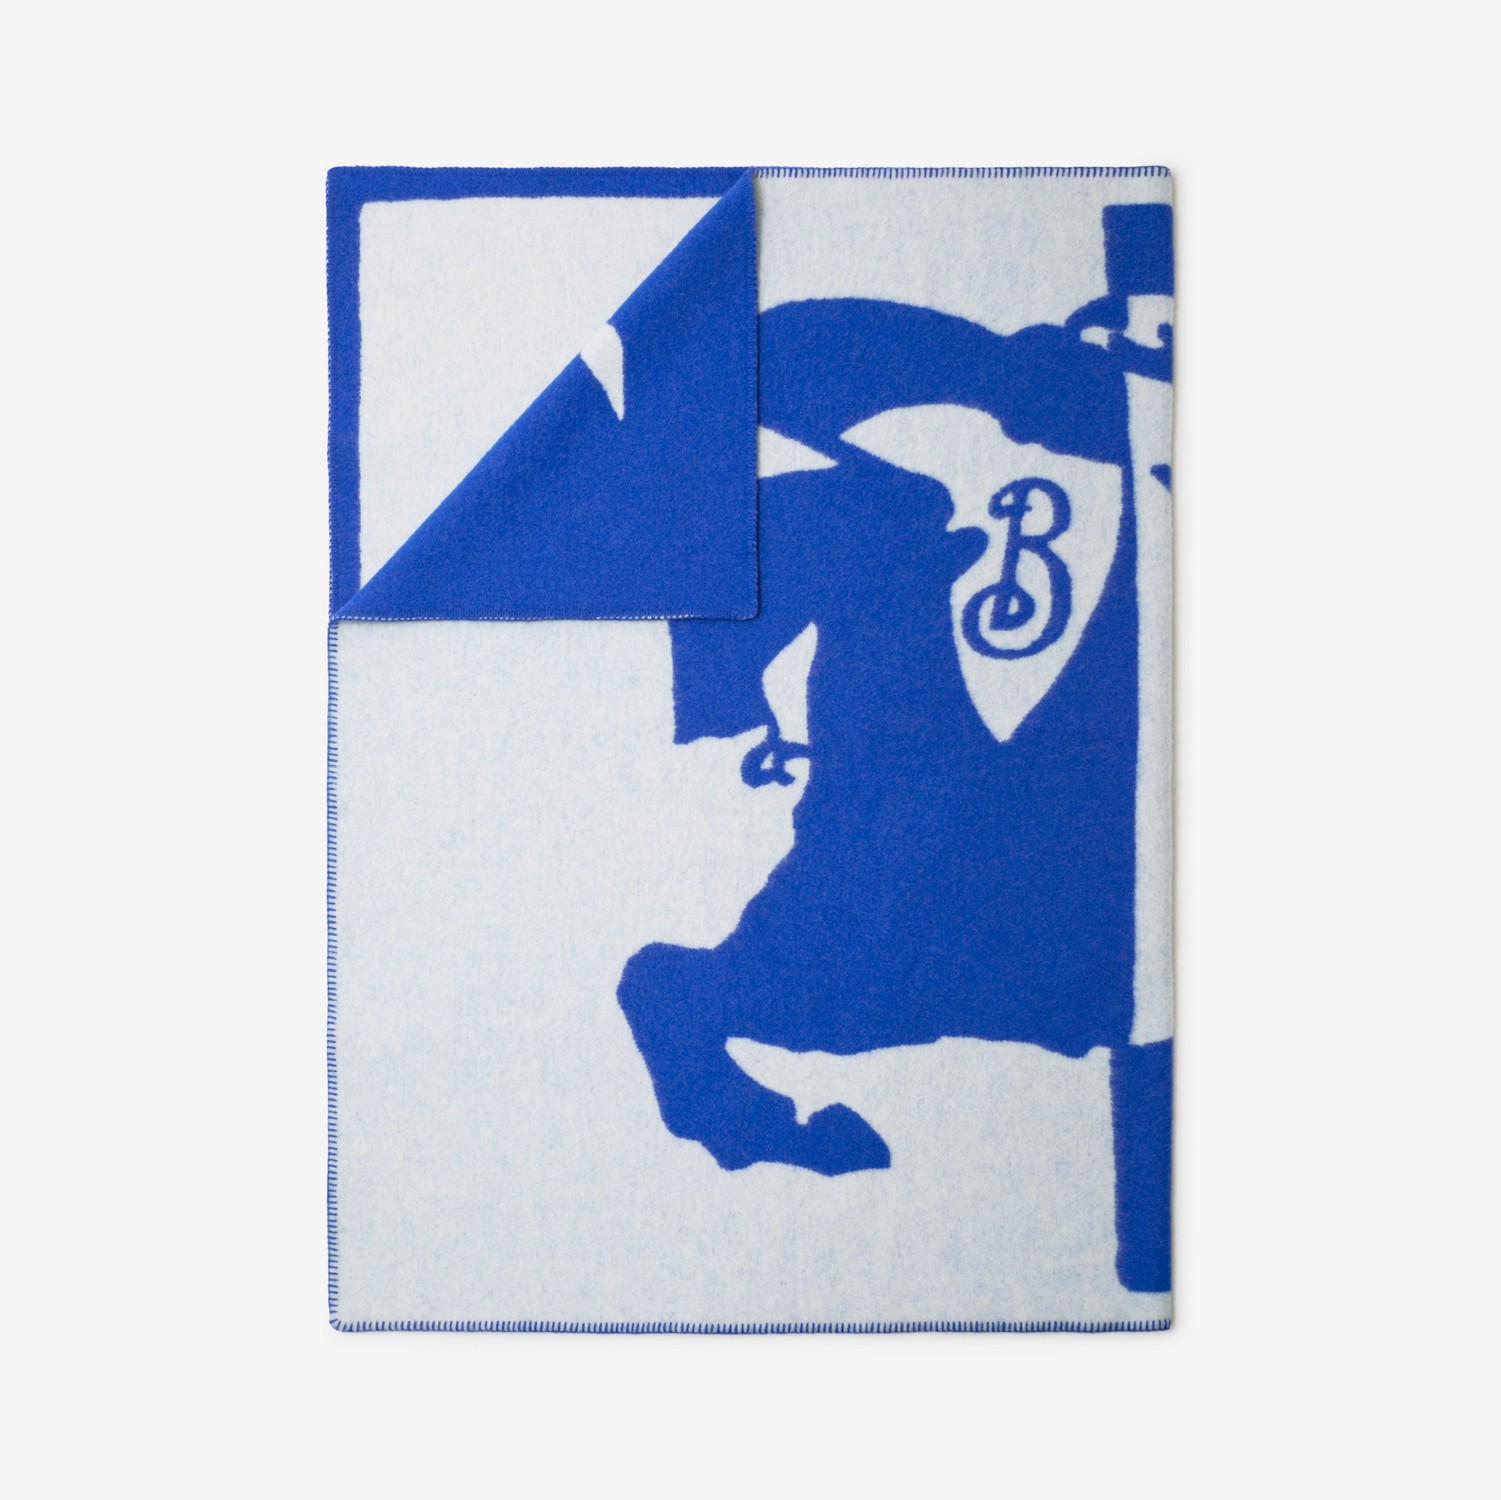 马术骑士徽标羊毛毯 (骑士蓝) | Burberry® 博柏利官网